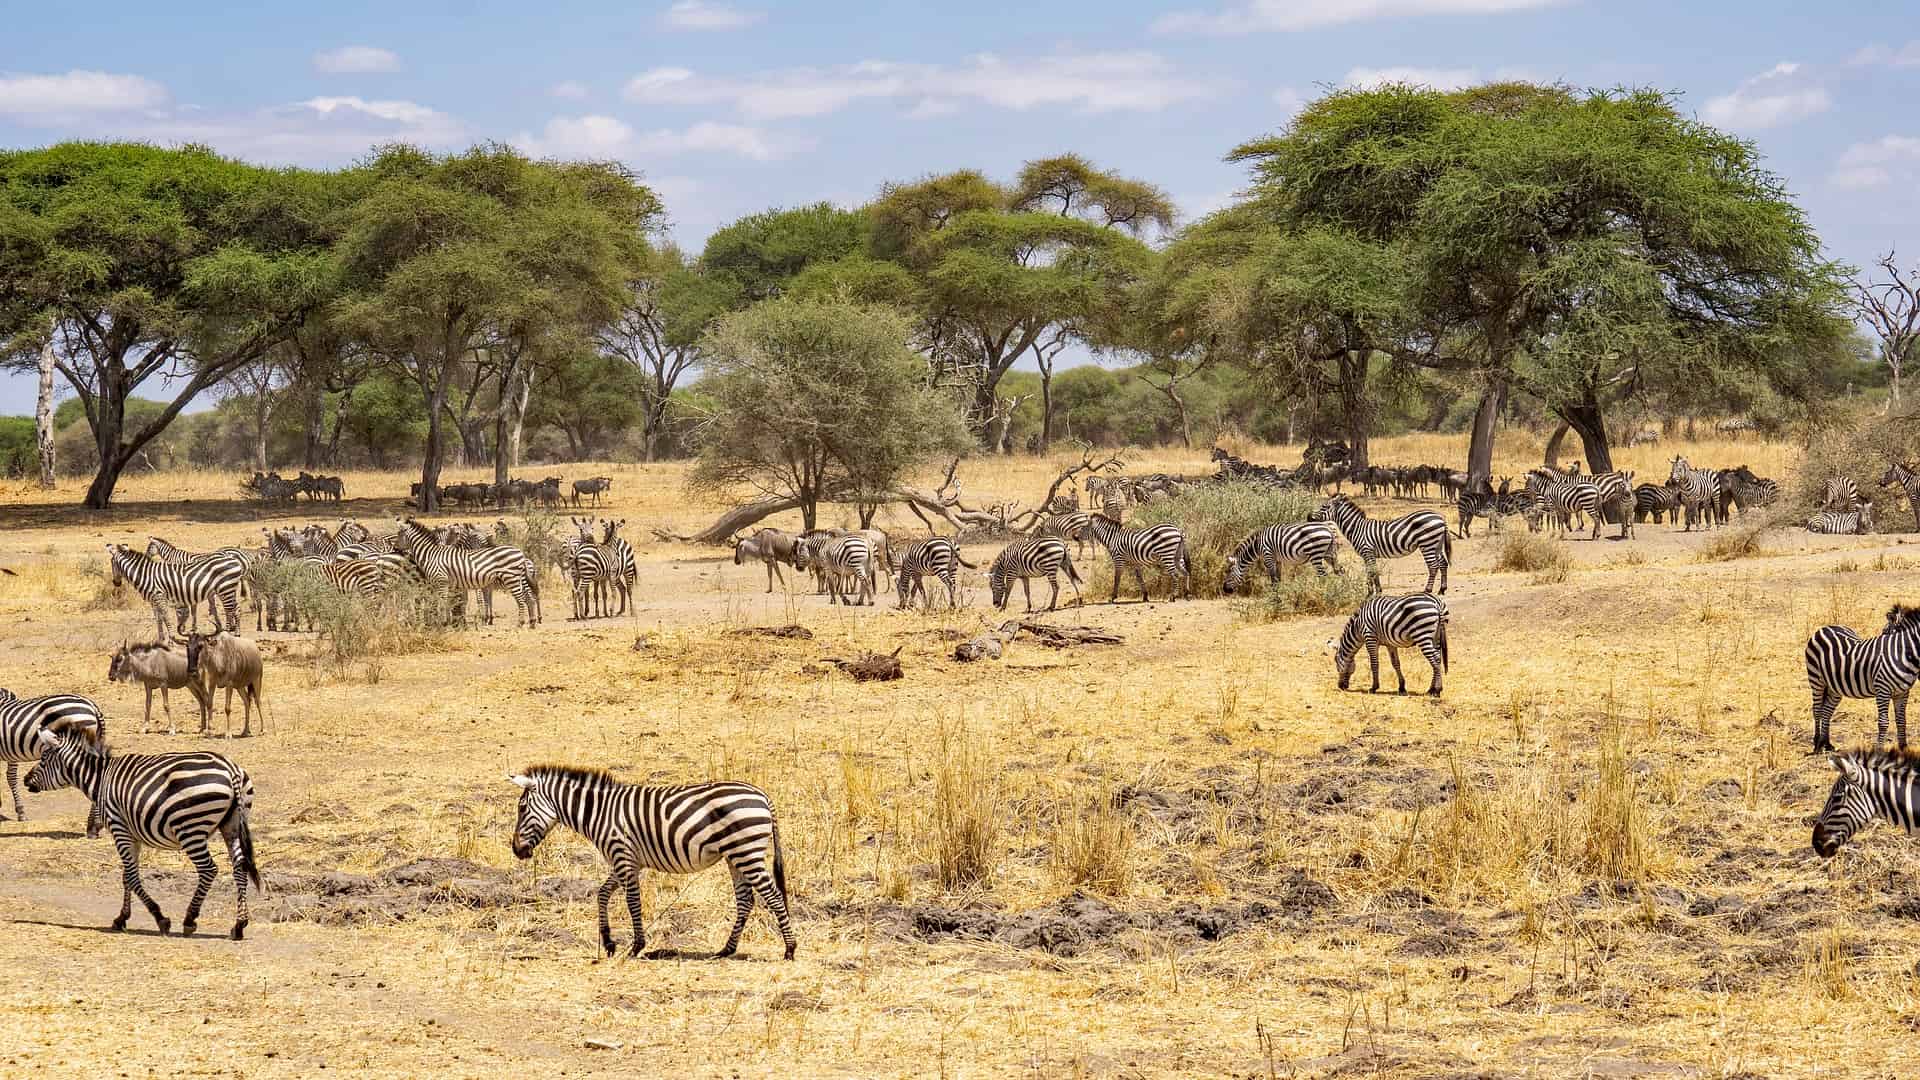 Zebras grassing in Tanzania.